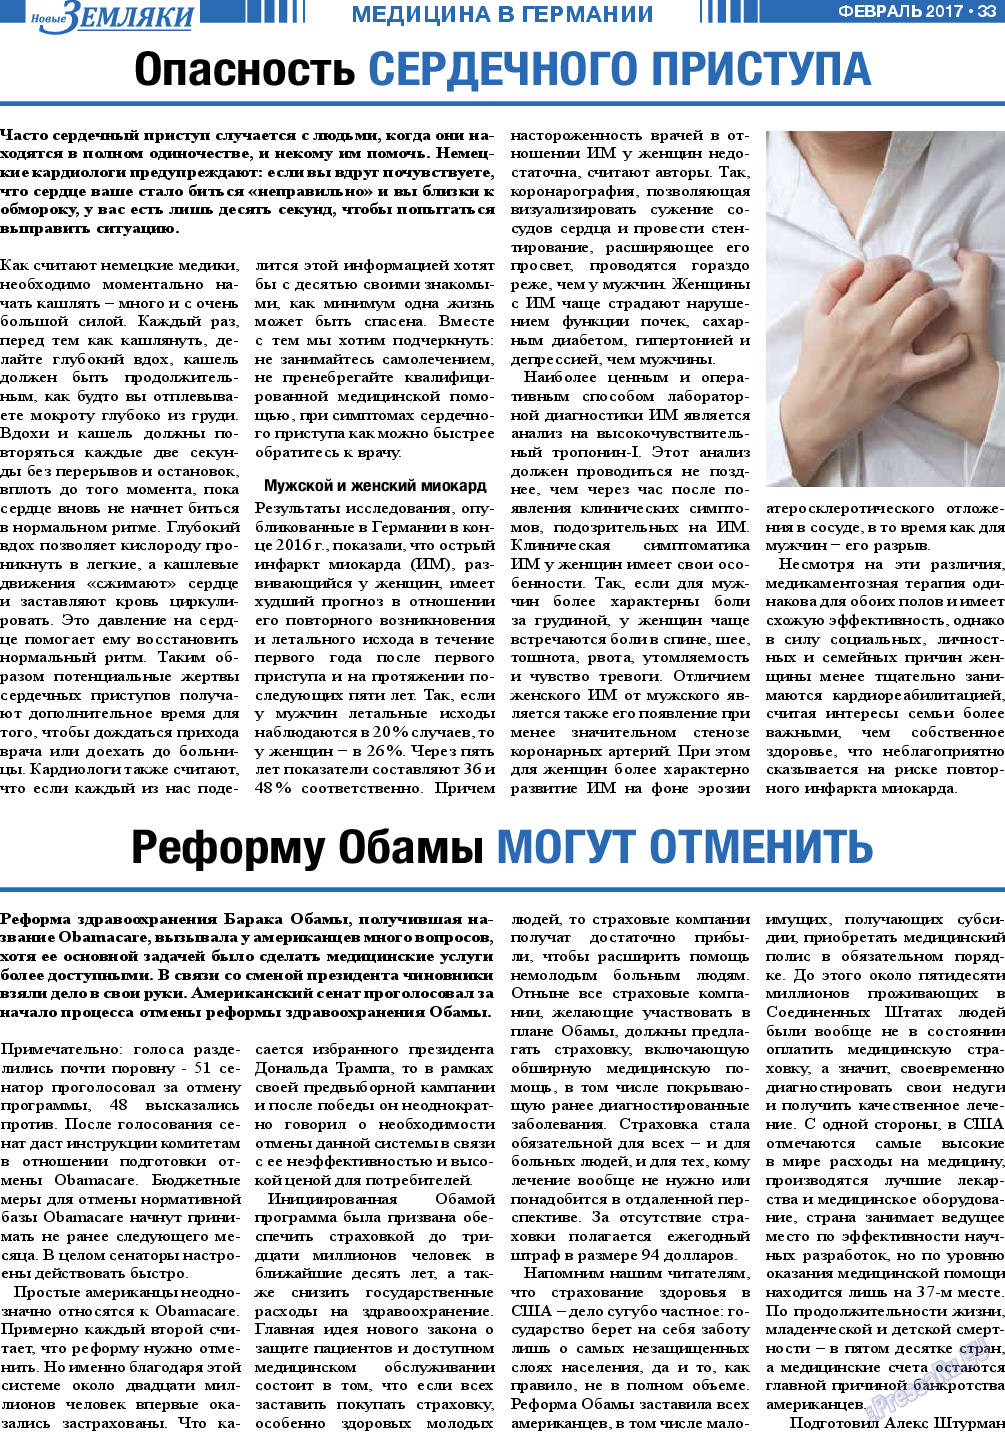 Новые Земляки, газета. 2017 №2 стр.33